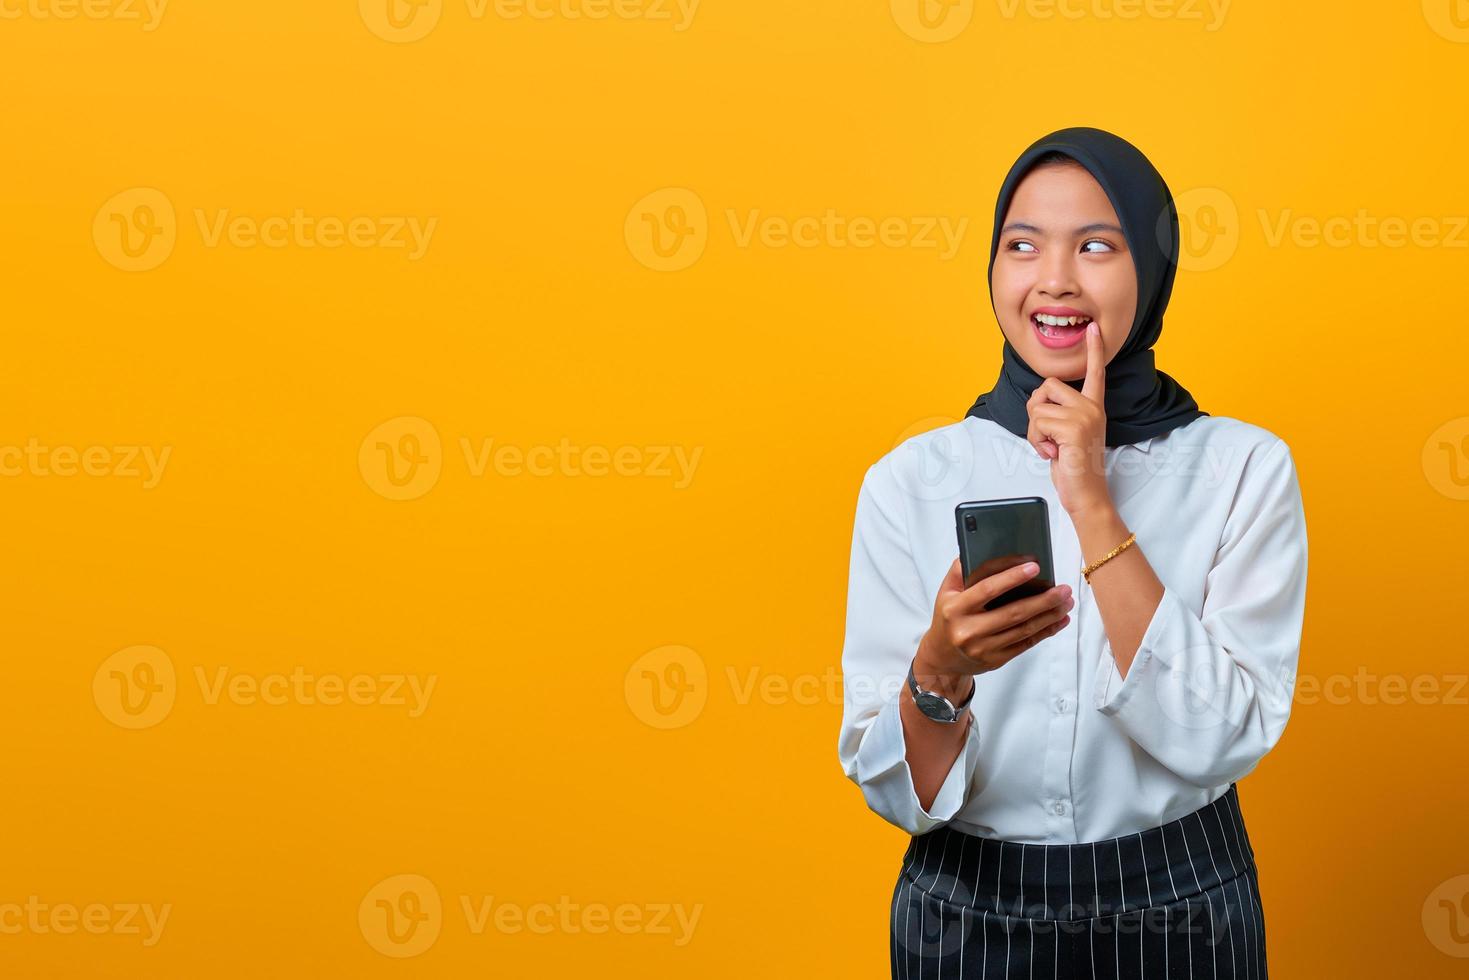 ritratto di giovane donna asiatica attraente che tiene il telefono cellulare e la mano sulle labbra su sfondo giallo foto